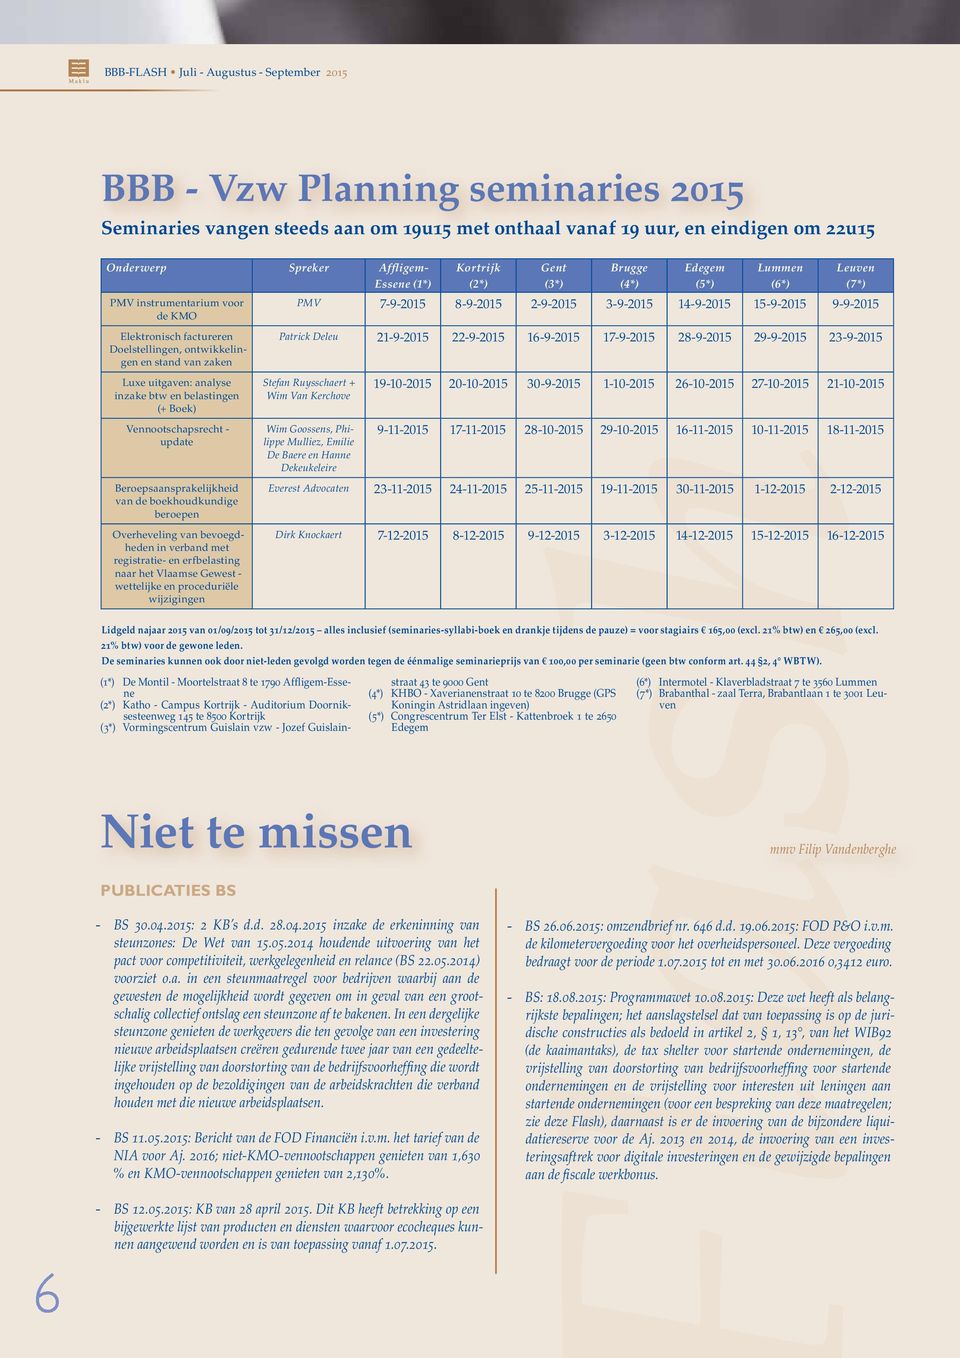 boekhoudkundige beroepen Overheveling van bevoegdheden in verband met registratie- en erfbelasting naar het Vlaamse Gewest - wettelijke en proceduriële wijzigingen Niet te missen PUBLICATIES BS